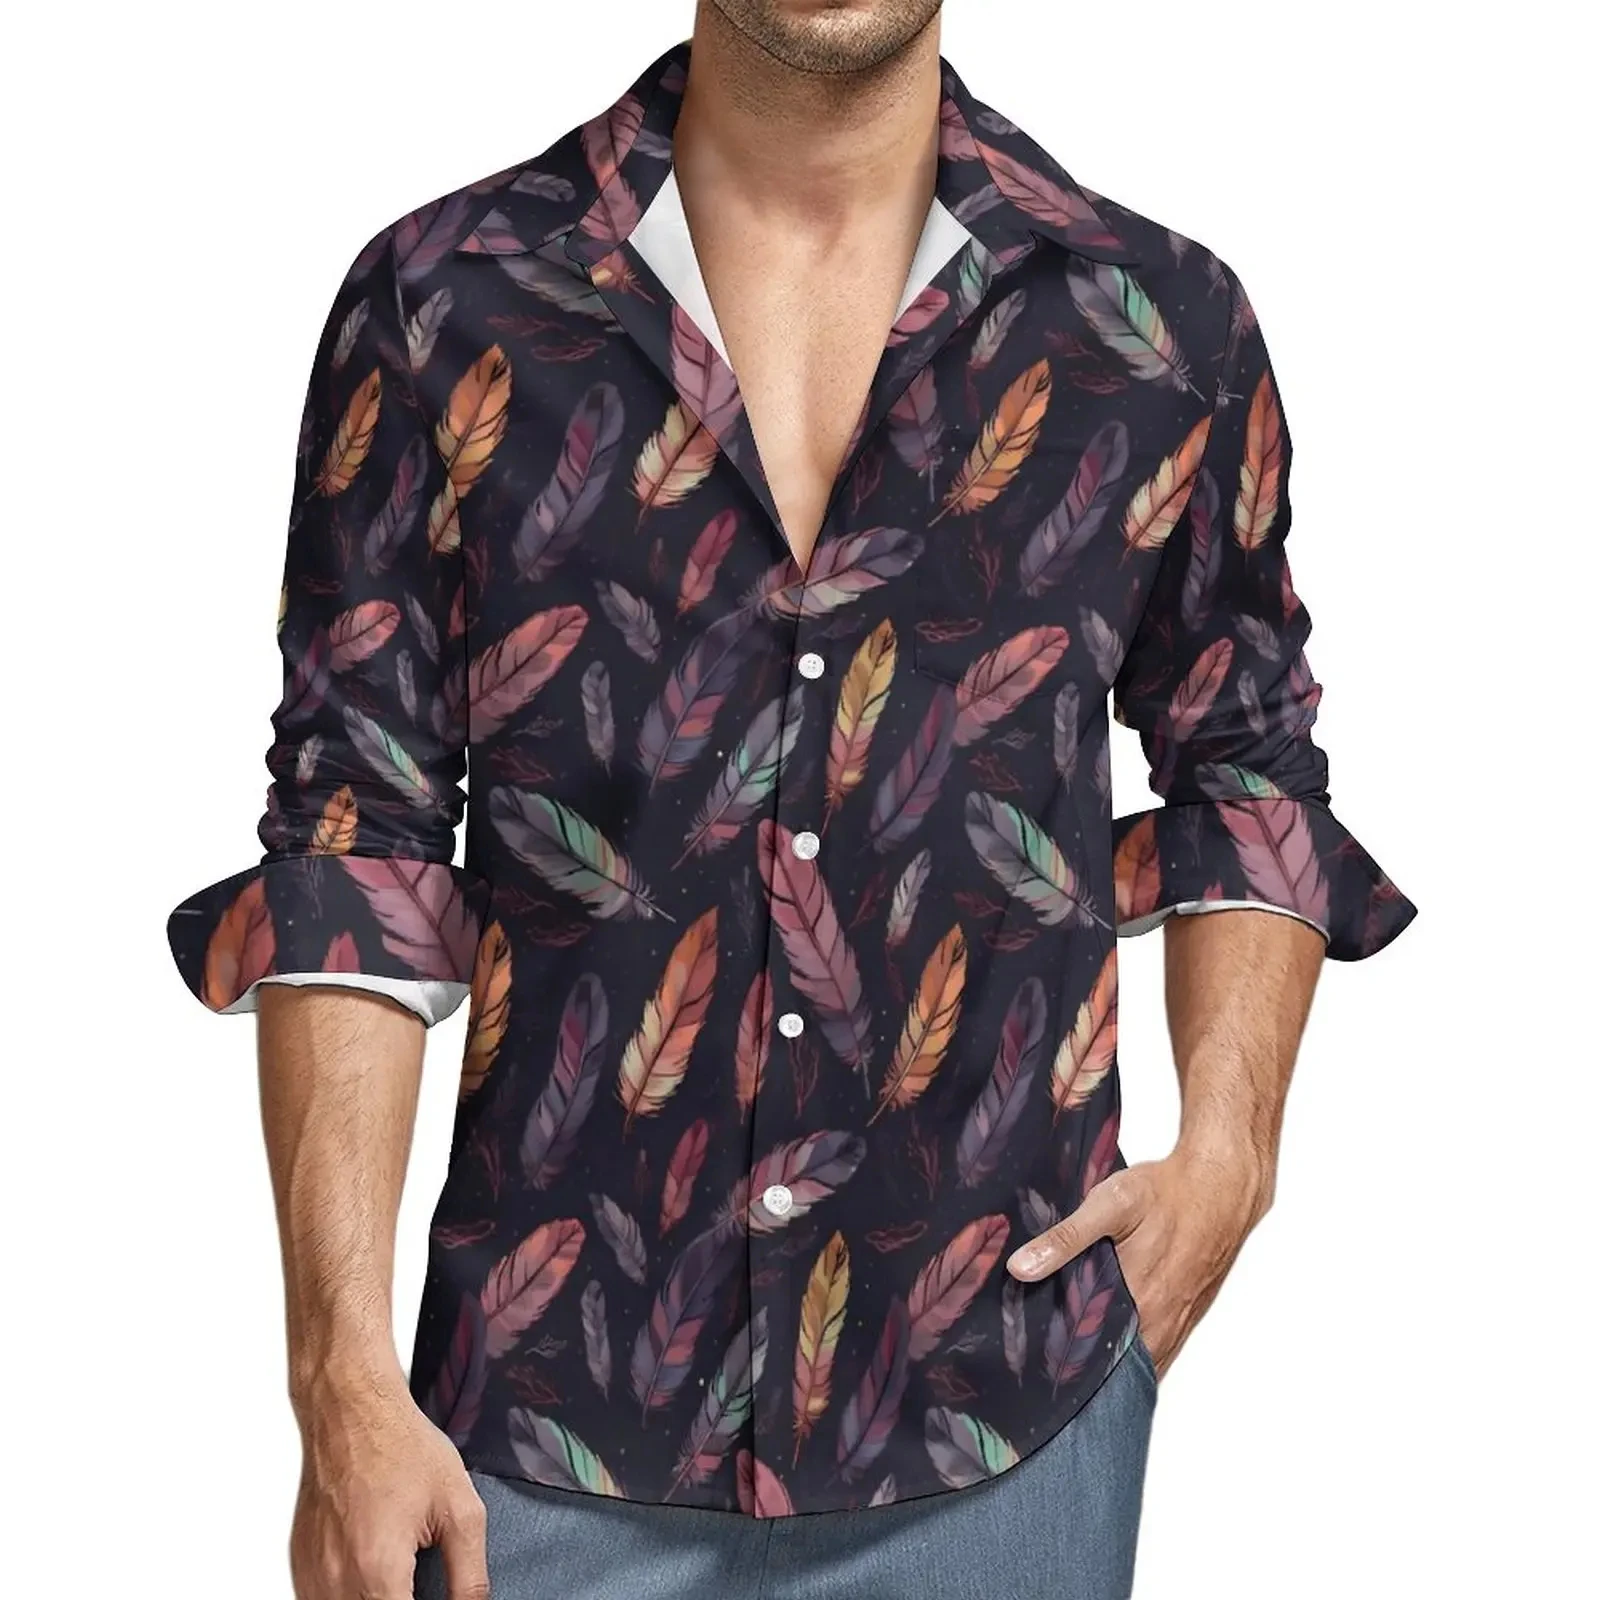 

Рубашка с длинным рукавом для мужчин и женщин, красивая Повседневная модная сорочка с 3D-принтом павлиньих перьев, топ с лацканами, одежда в стиле оверсайз, унисекс